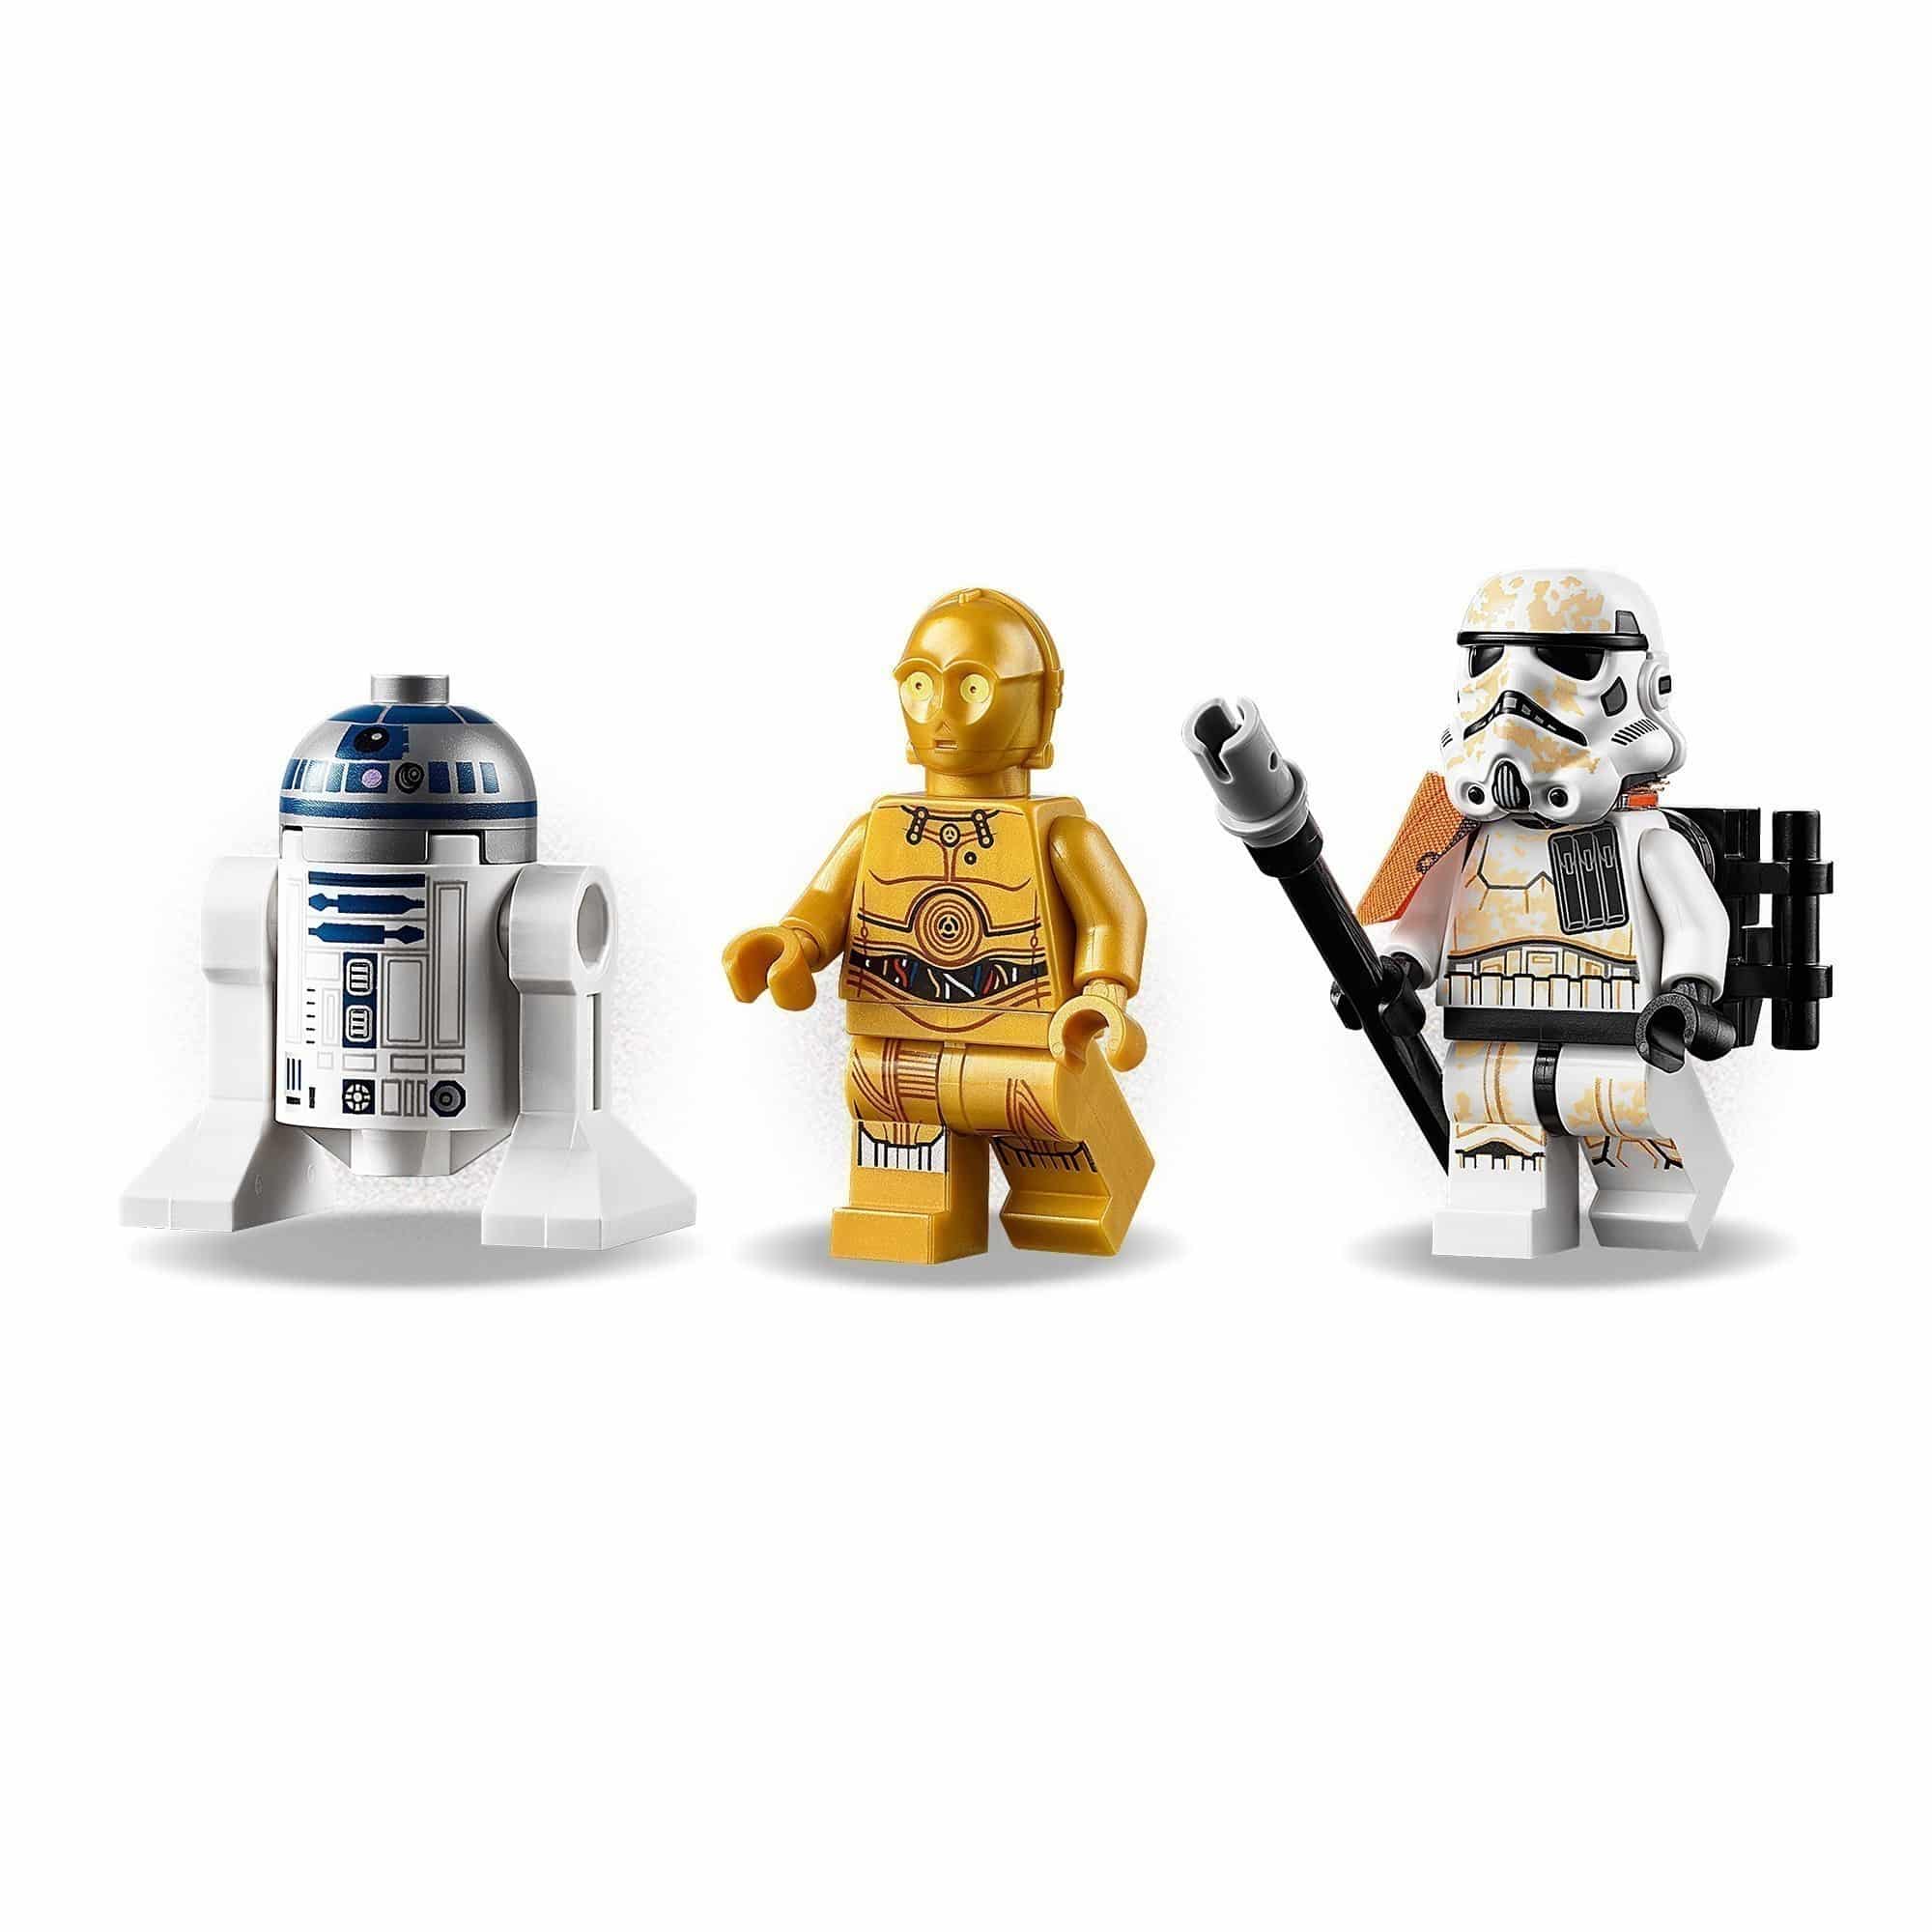 LEGO® - Star Wars™ - 75228 Escape Pod Vs Dewback™ Microfighters